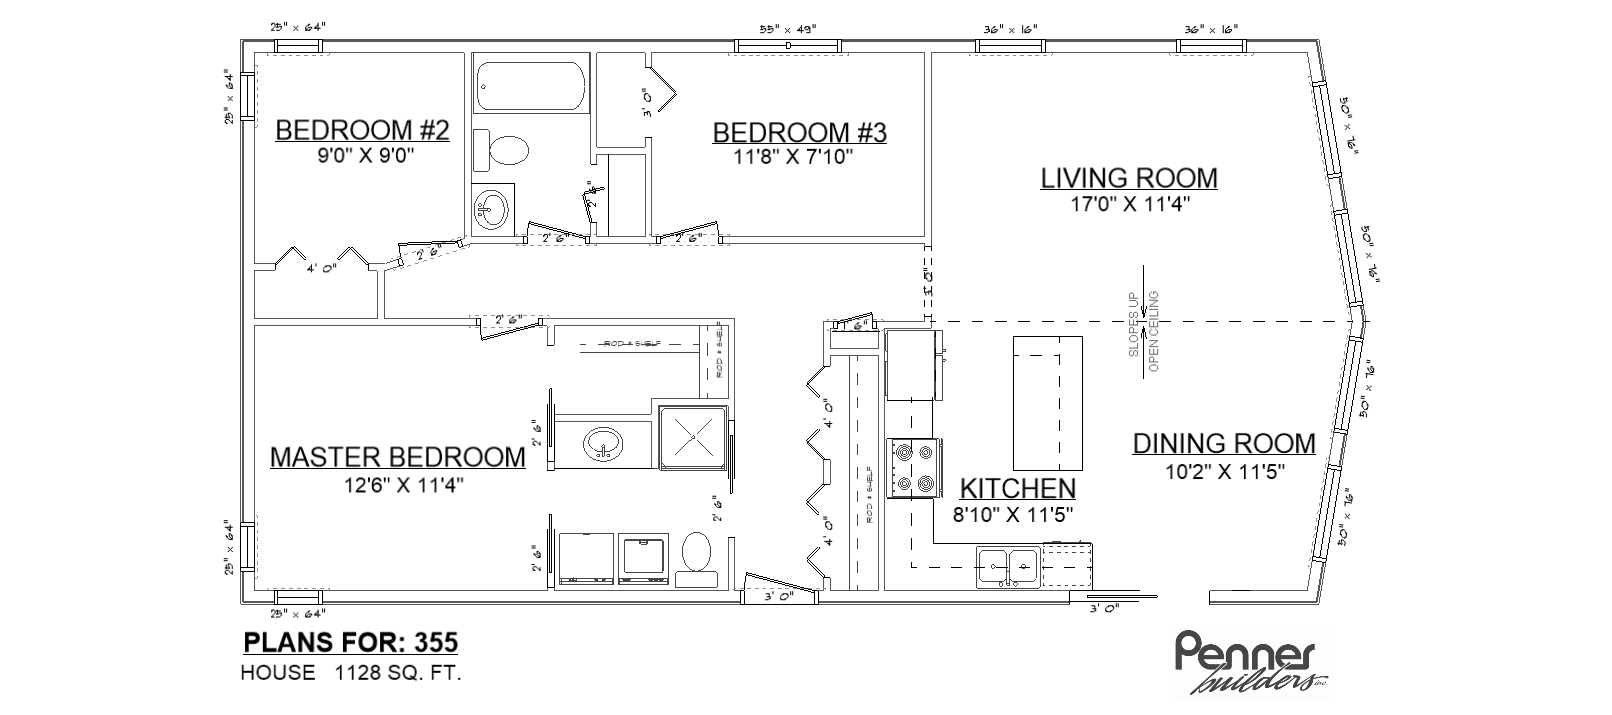 Penner Homes Floor Plan Id: 355